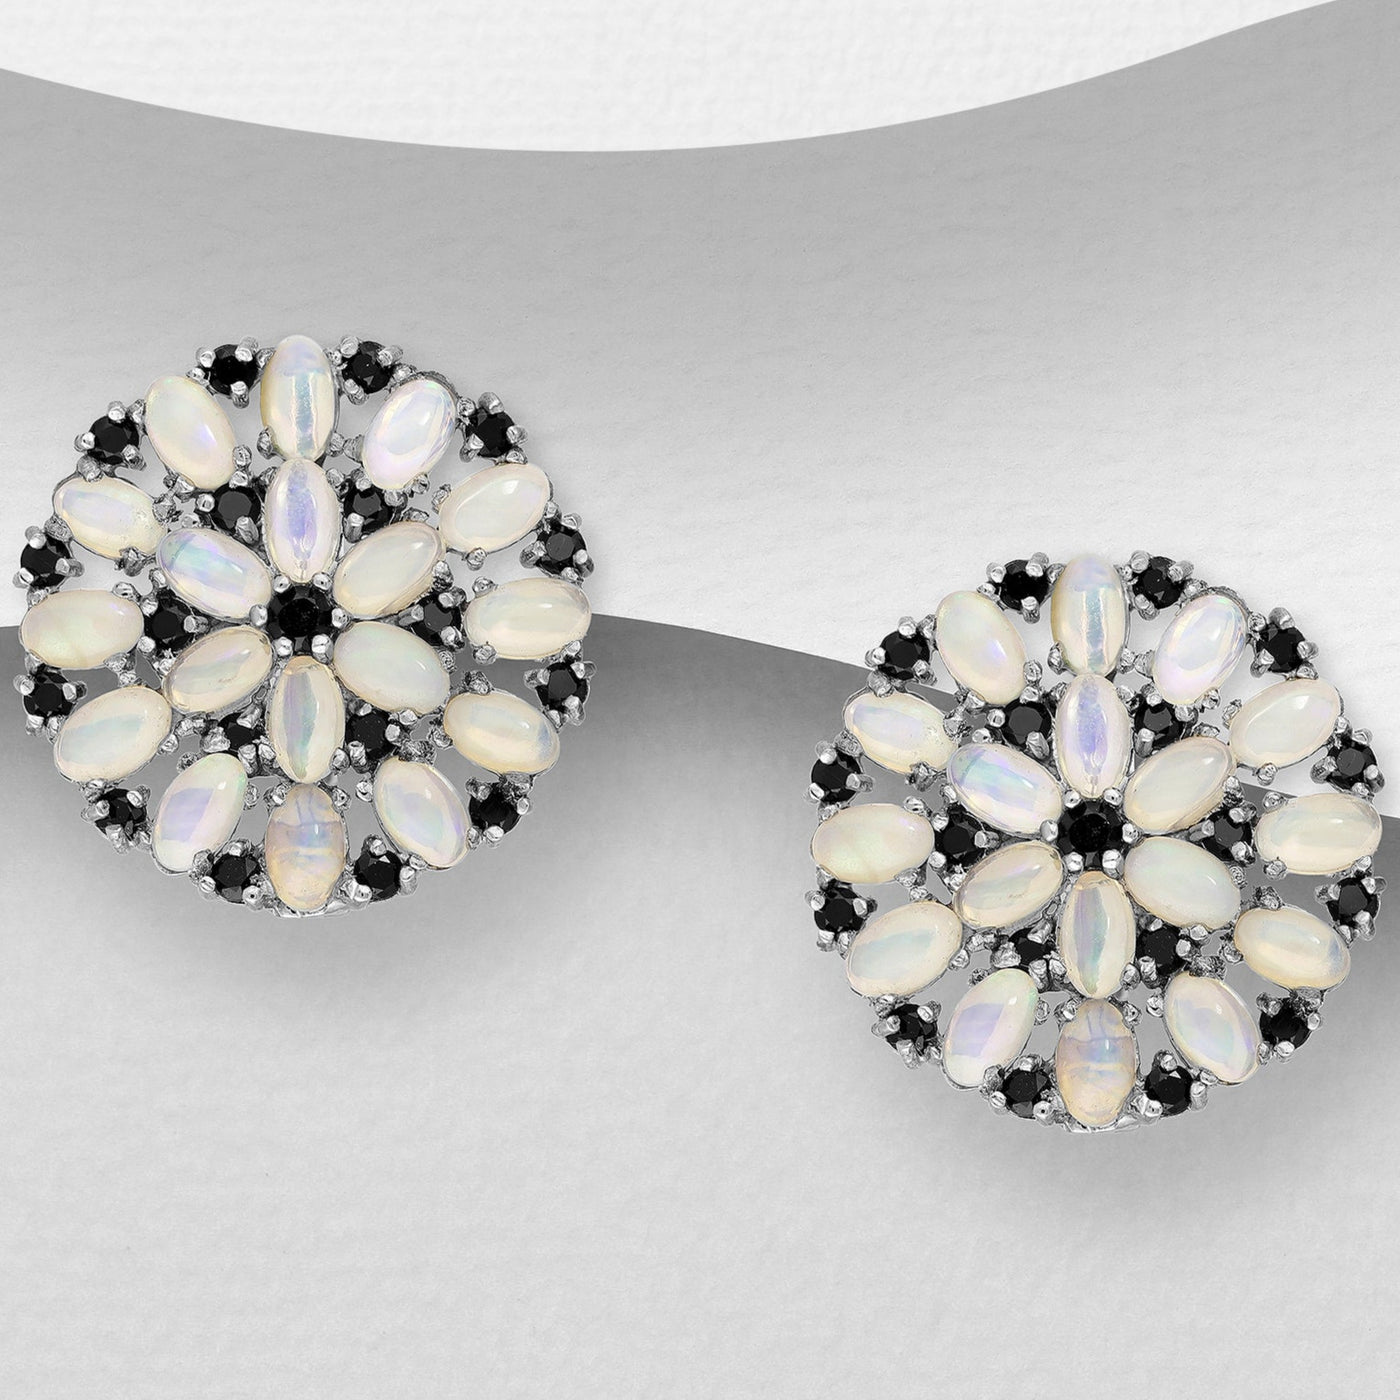 Opal & Black Spinel Silver Earrings